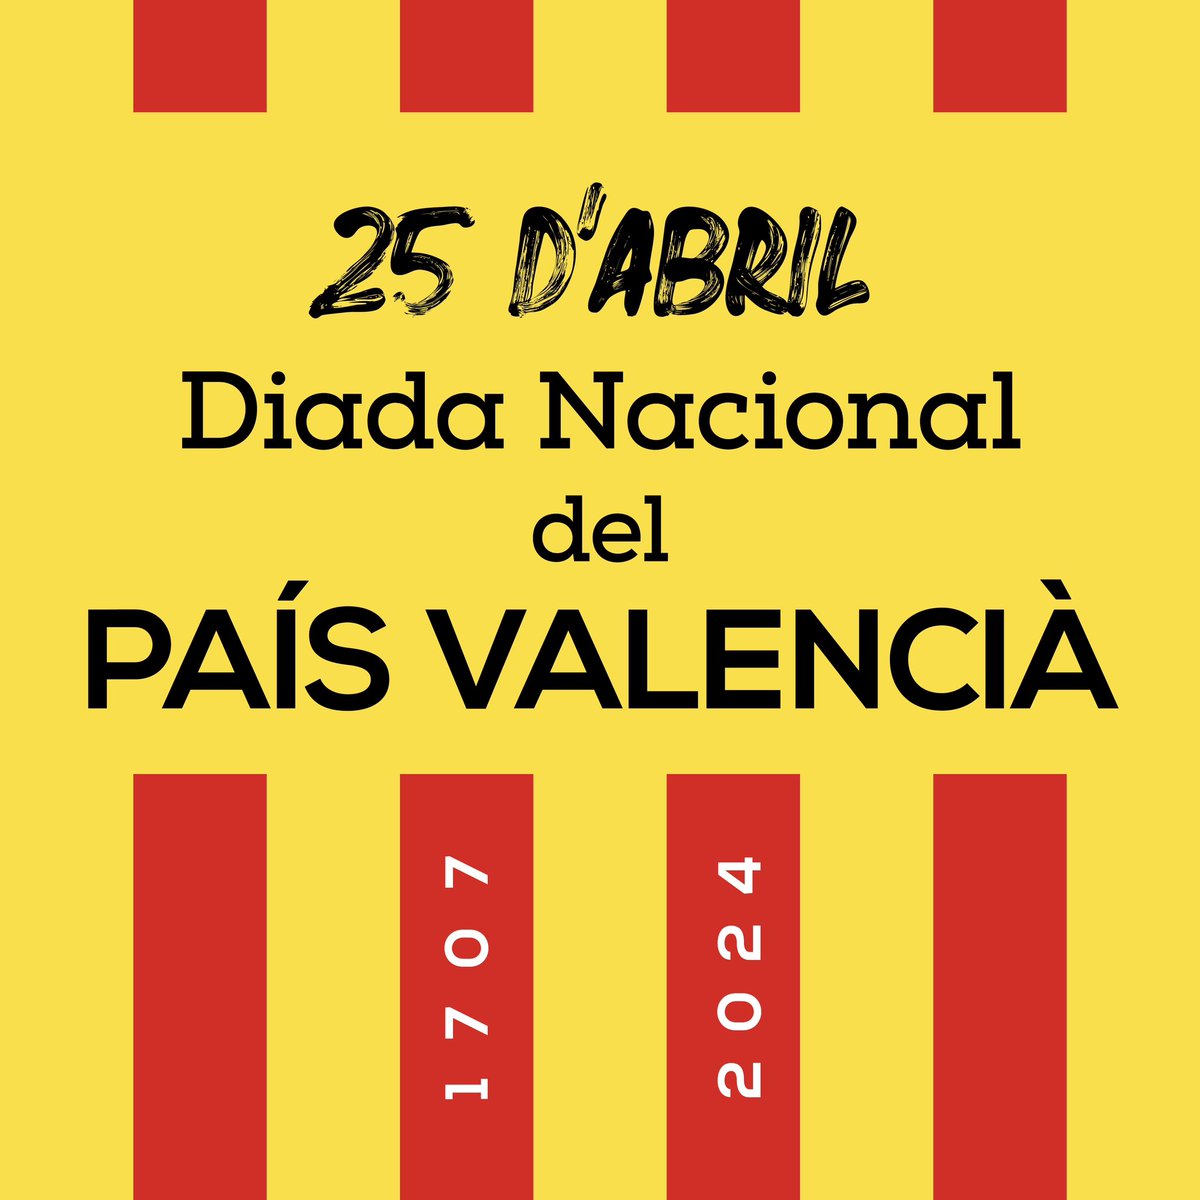 #DiadaNacionalPaísValencià 
#25dAbril #PaísValencià